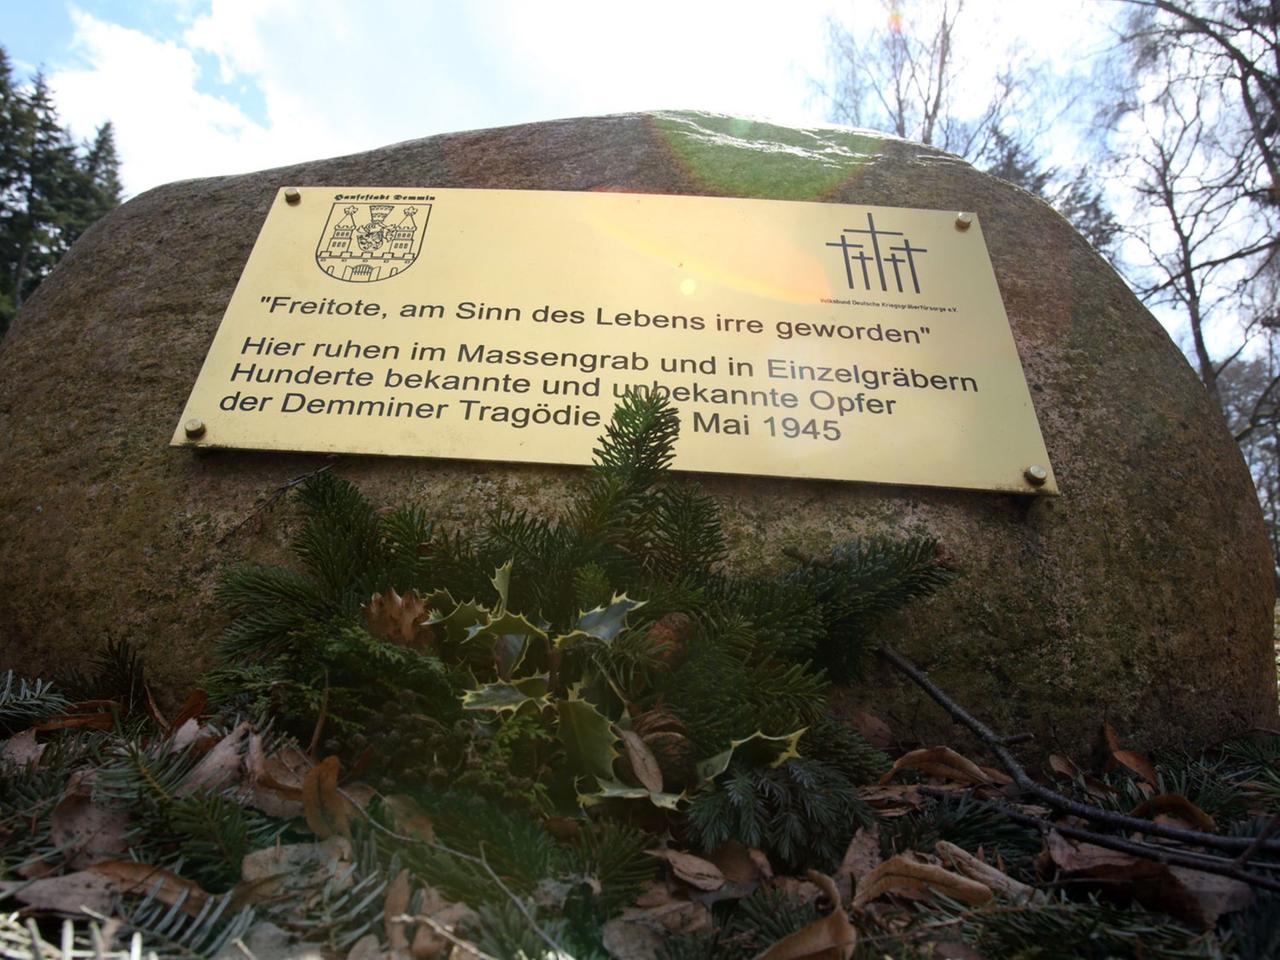 Eine Tafel an einem Gedenkstein auf dem Friedhof in Demmin (Mecklenburg-Vorpommern) erinnert an den Massenselbstmord 1945, aufgenommen am 08.04.2013. In Demmin kam es Historikern zufolge zum Kriegsende zu einem der schlimmsten Fälle von Massenselbstmord.